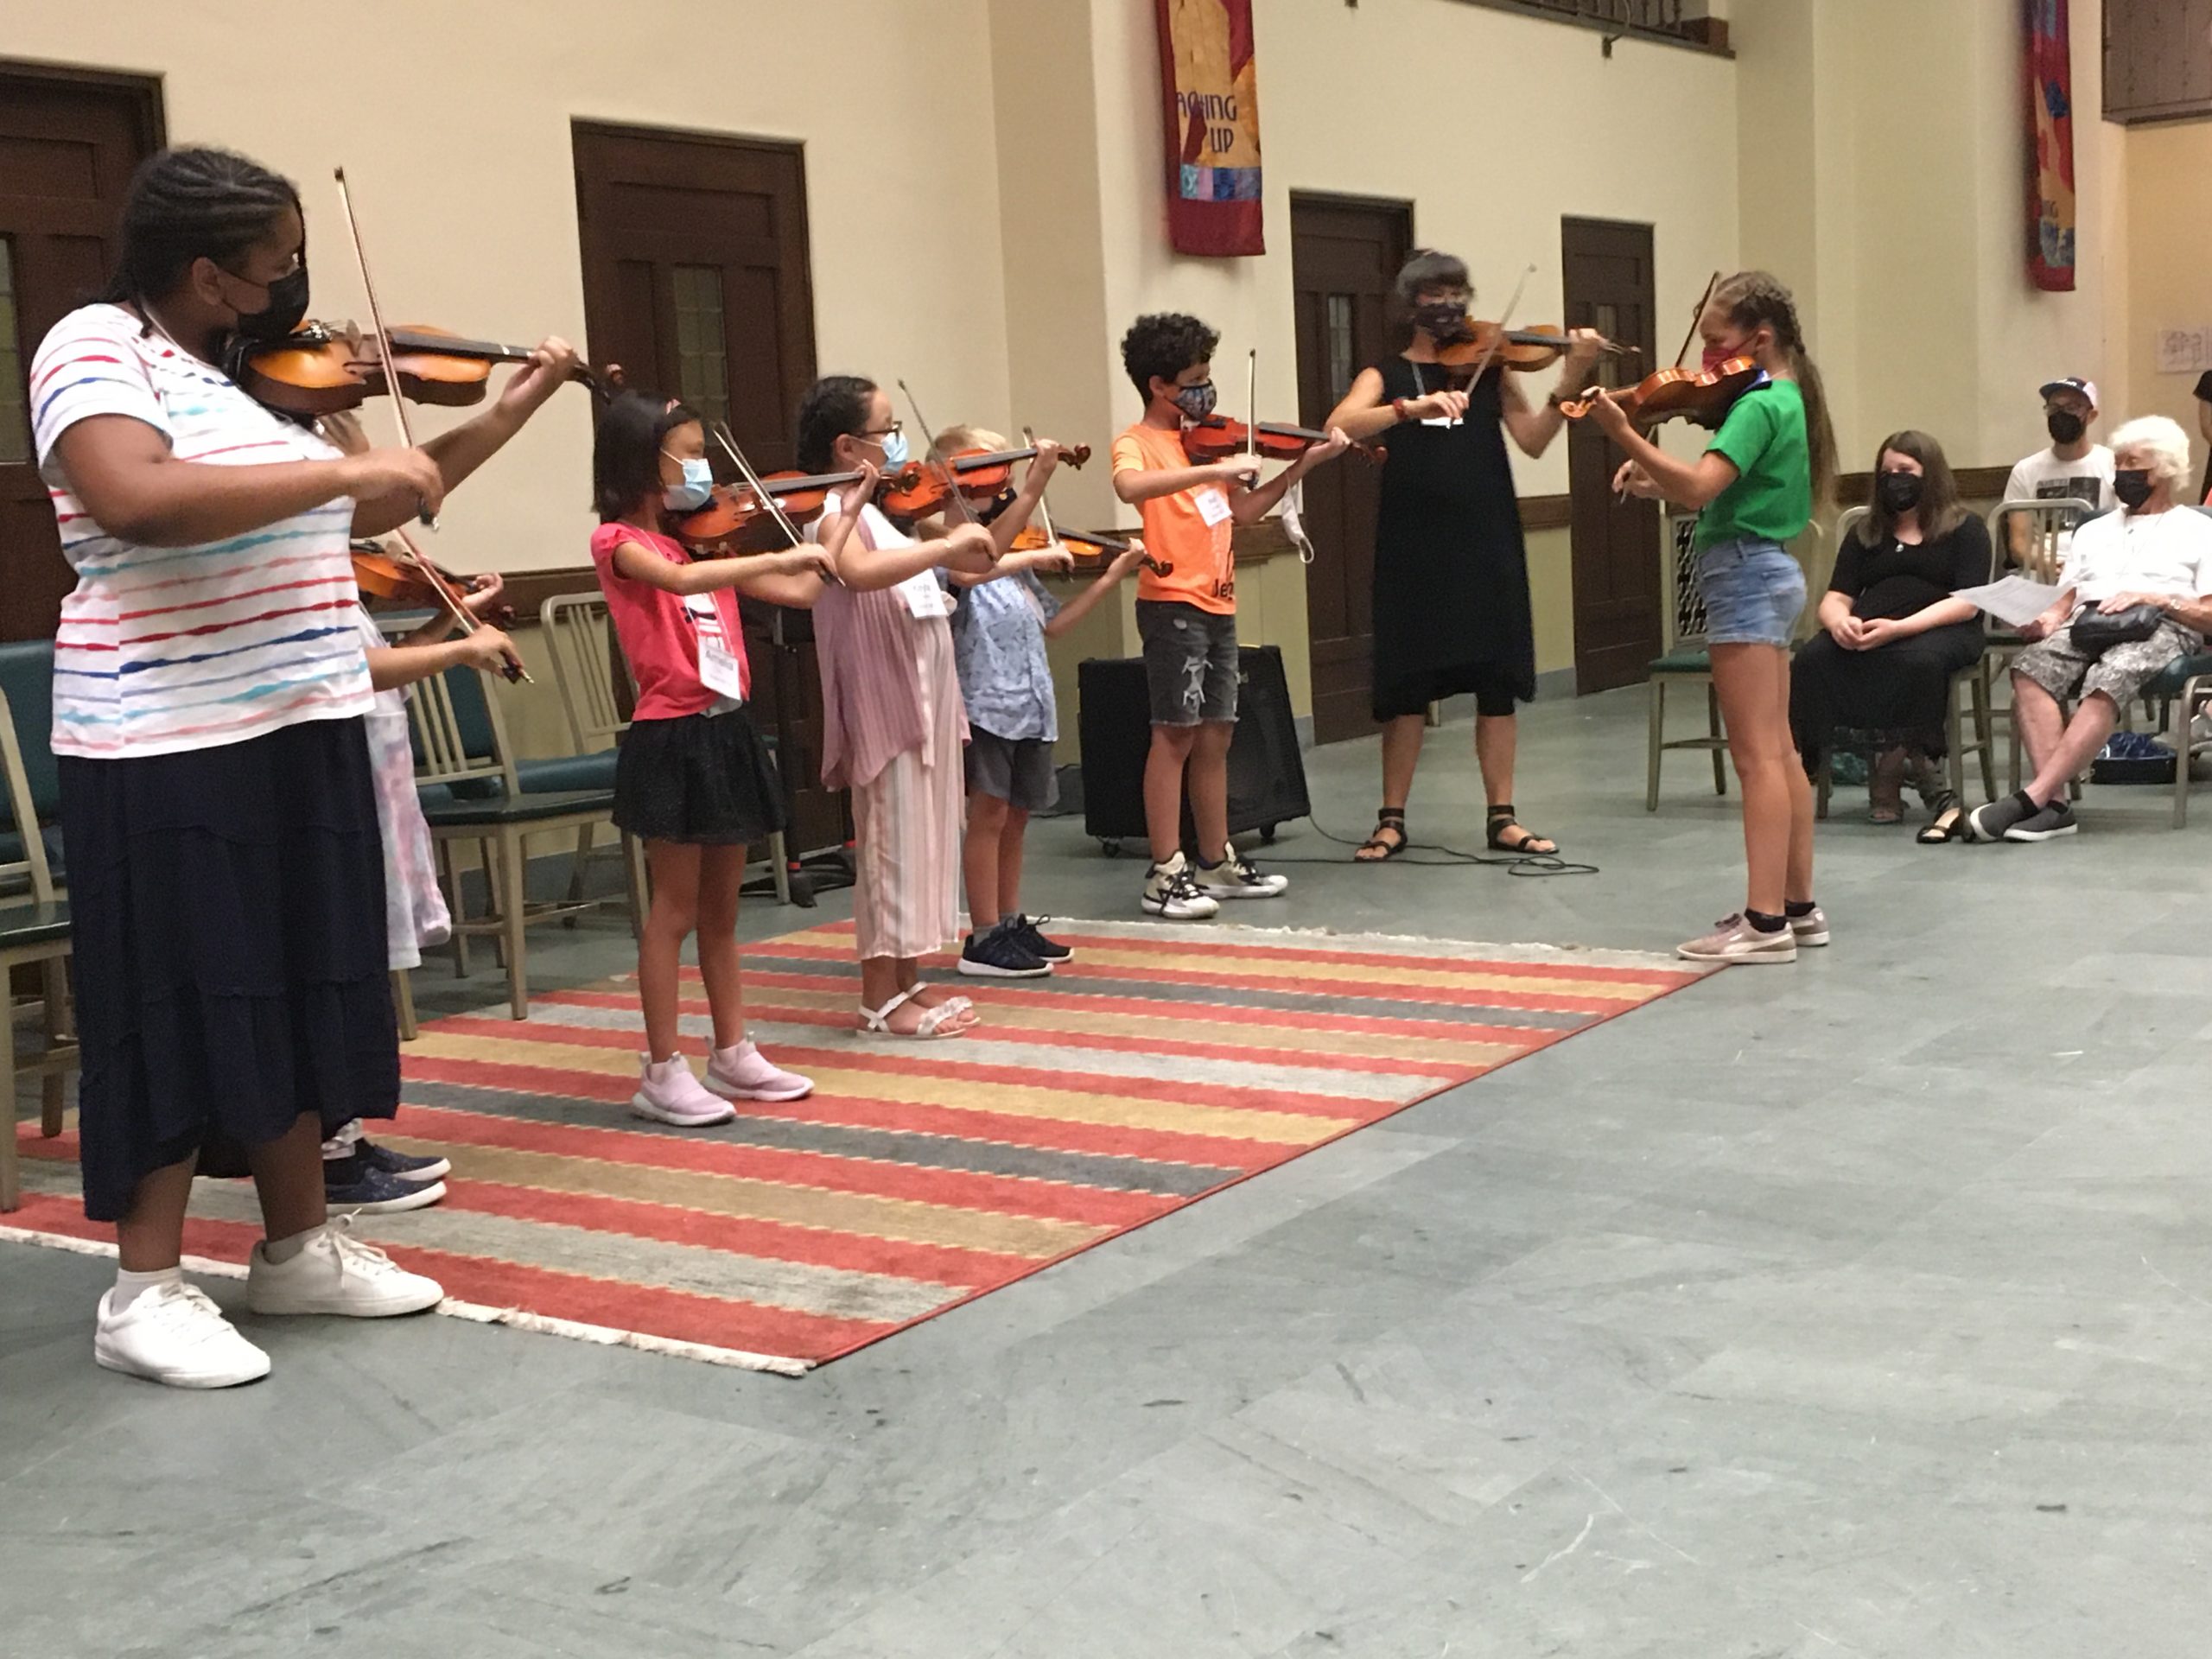 children playing violin